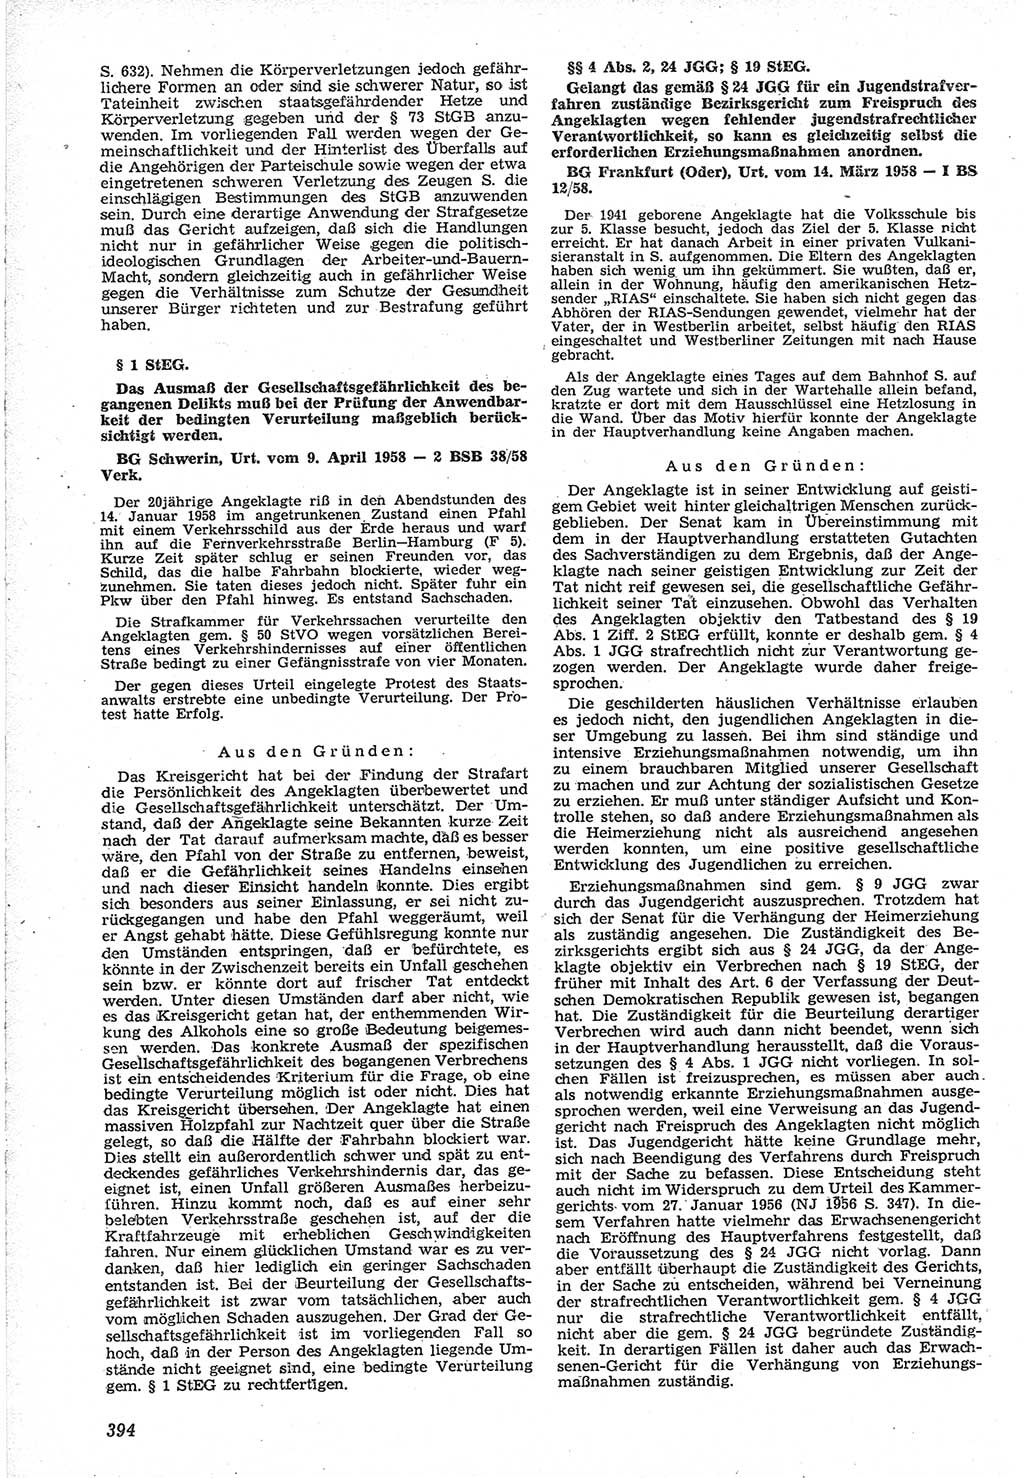 Neue Justiz (NJ), Zeitschrift für Recht und Rechtswissenschaft [Deutsche Demokratische Republik (DDR)], 12. Jahrgang 1958, Seite 394 (NJ DDR 1958, S. 394)